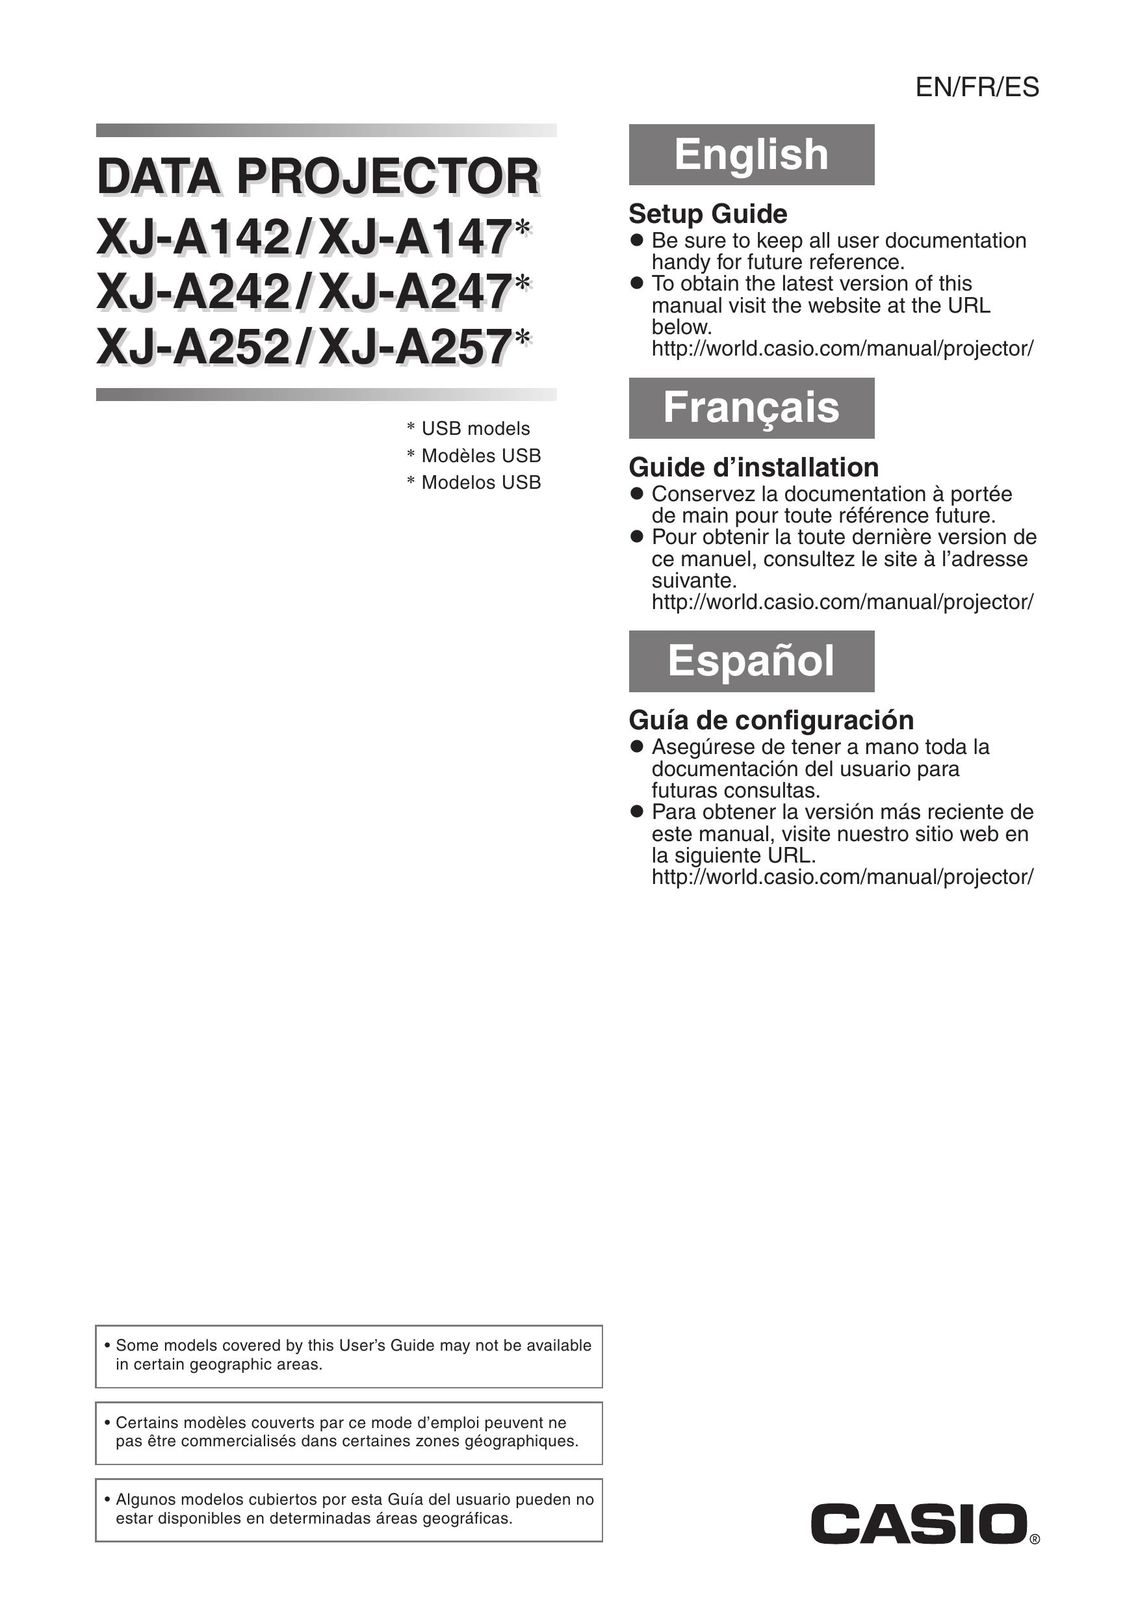 Casio XJ-A242/XJ-A247 Projector User Manual